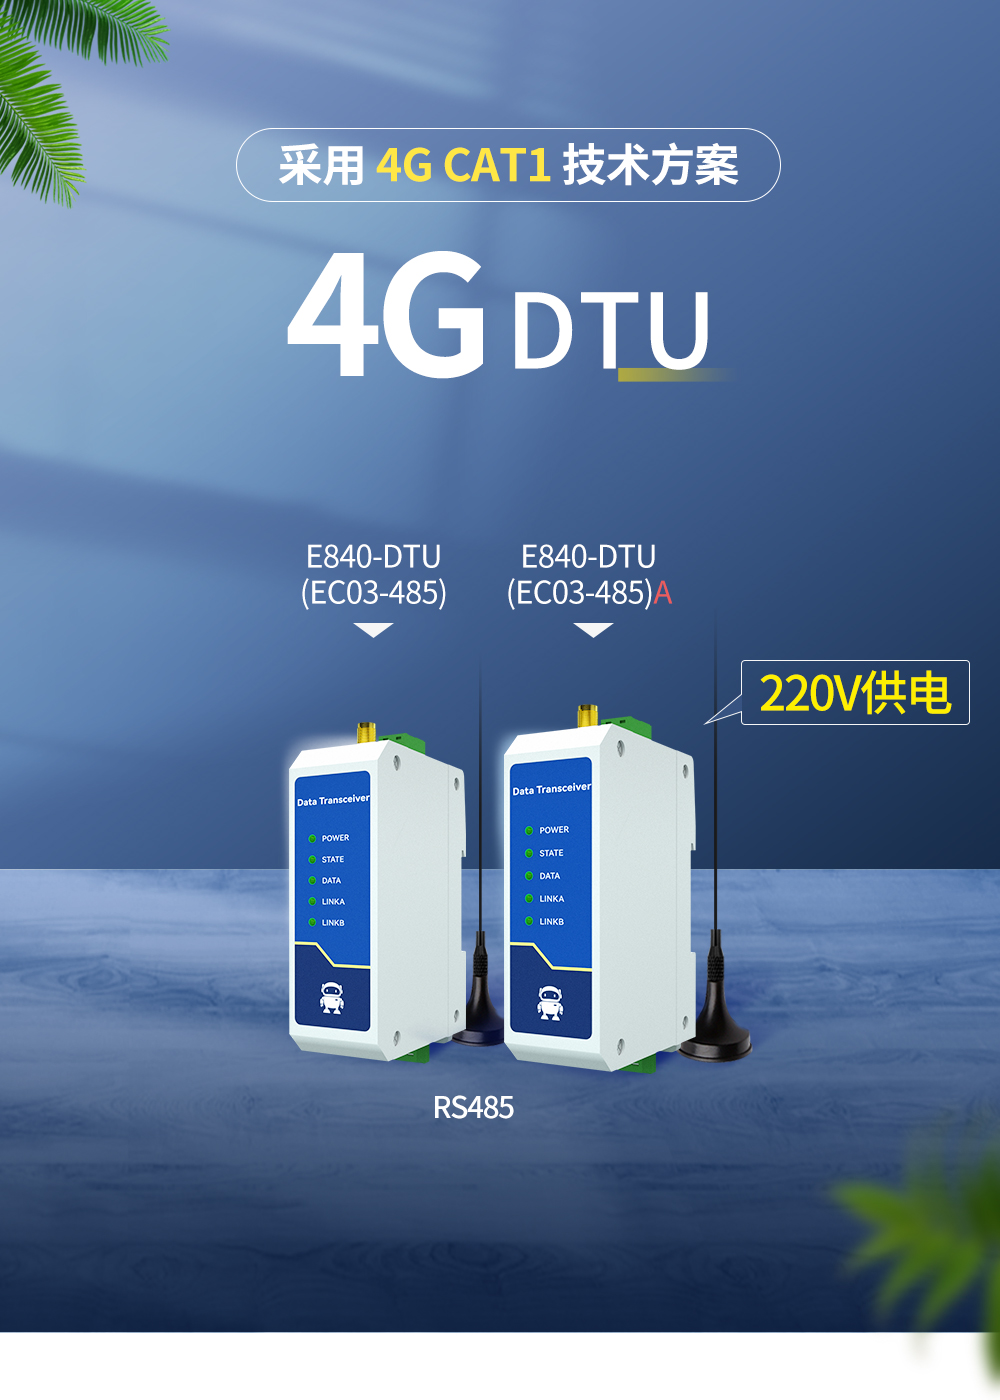 4G DTU (1)